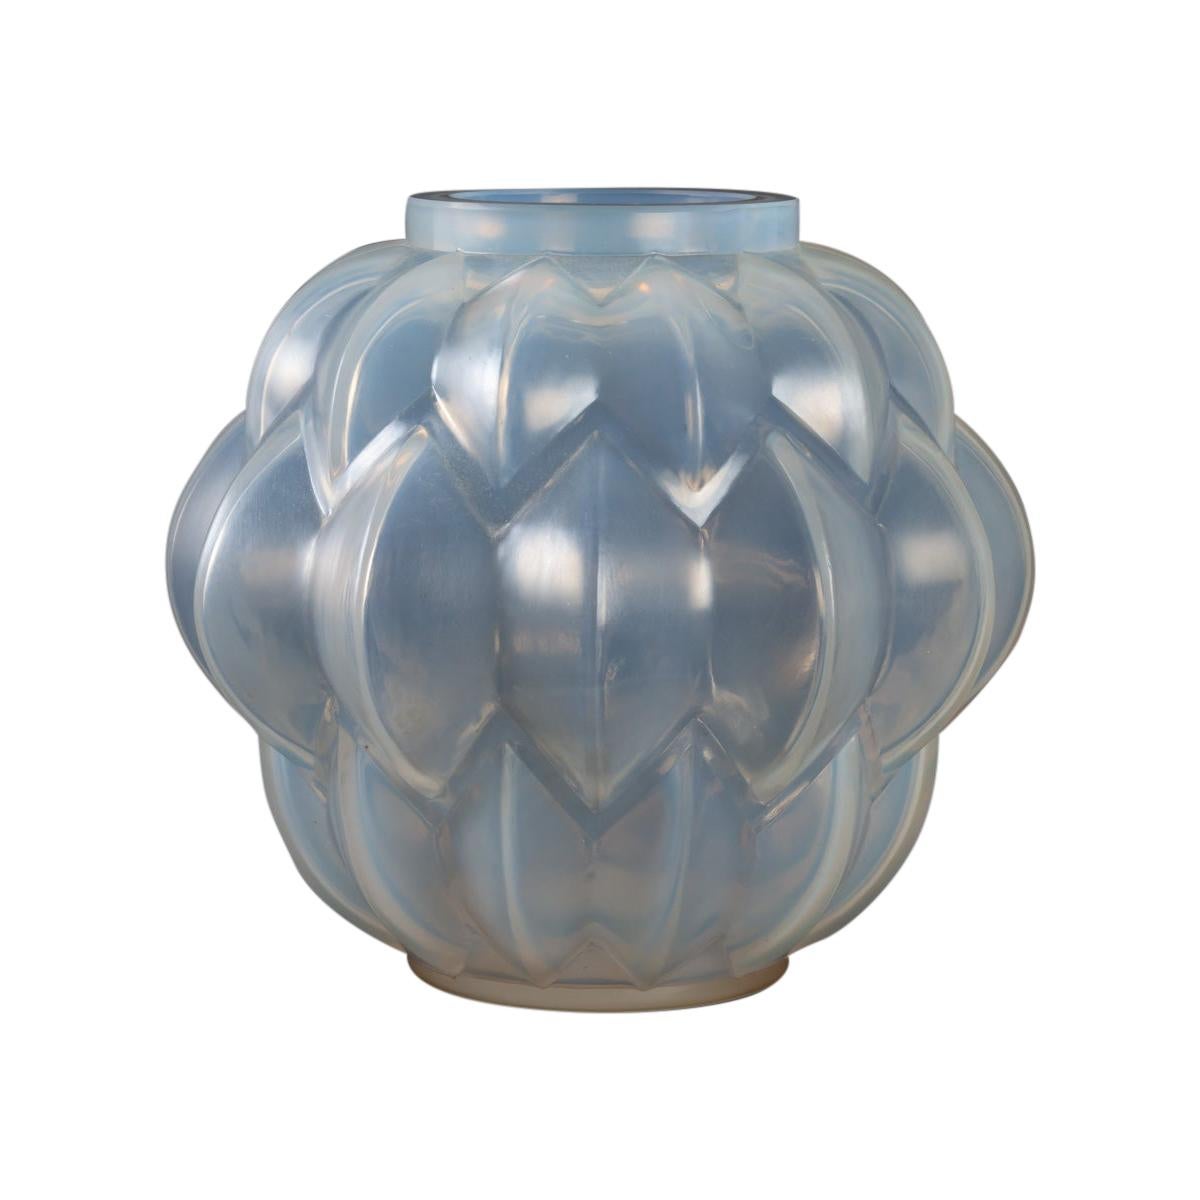 1927 René Lalique Art Deco Nivernais Vase in Triple Cased Opalescent Glass